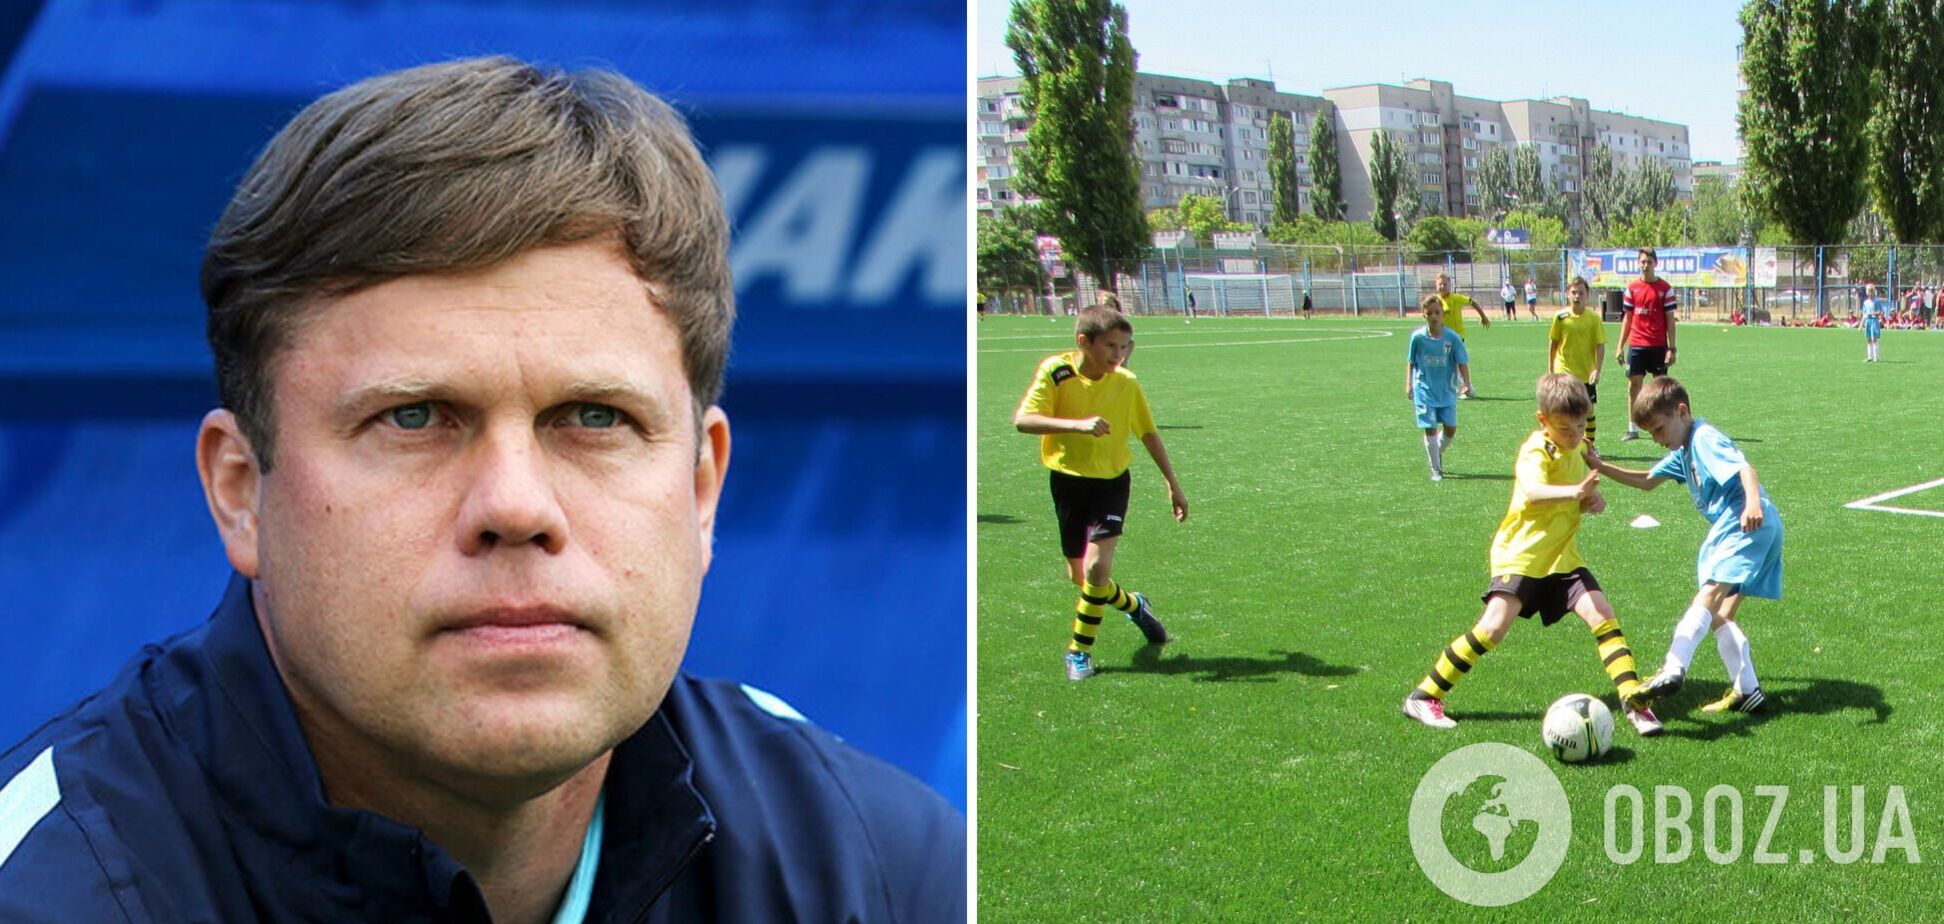 Звезда сборной России поддержал оккупацию Украины, цинично прикрывшись украинскими детьми